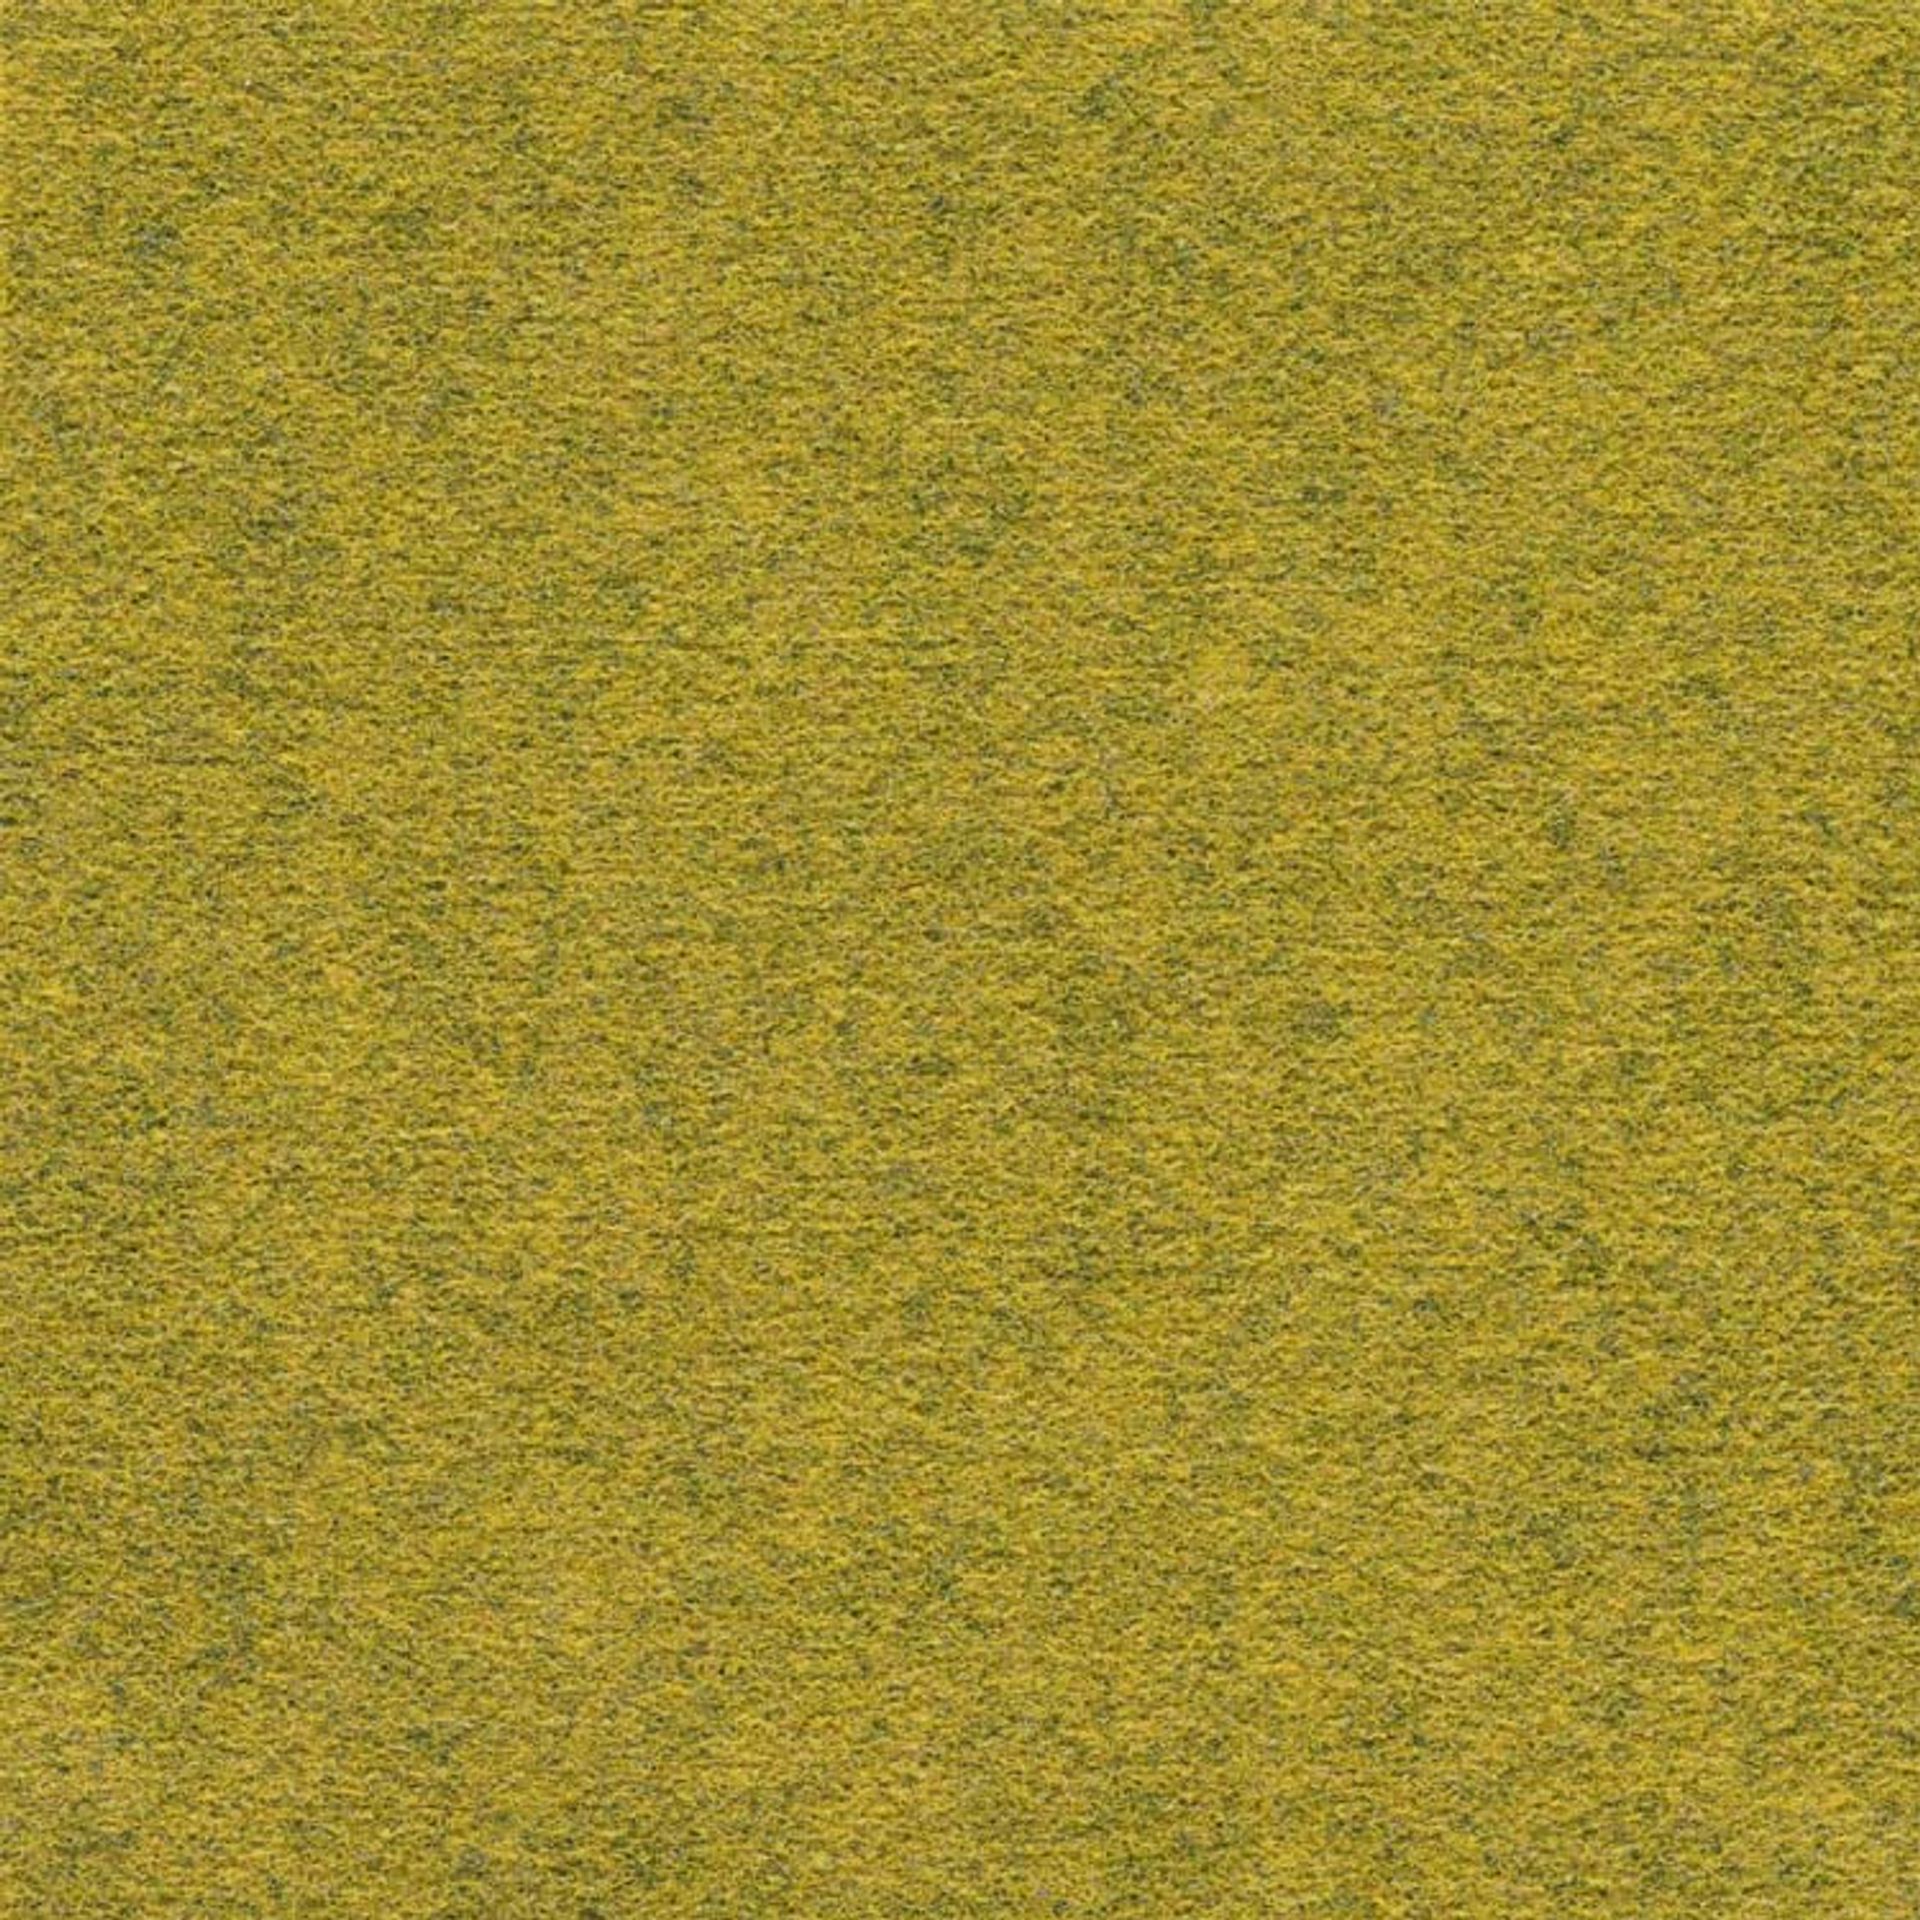 Teppichfliesen 50 x 50 cm Nadelvlies FINETT DIMENSION farbige größe f209102